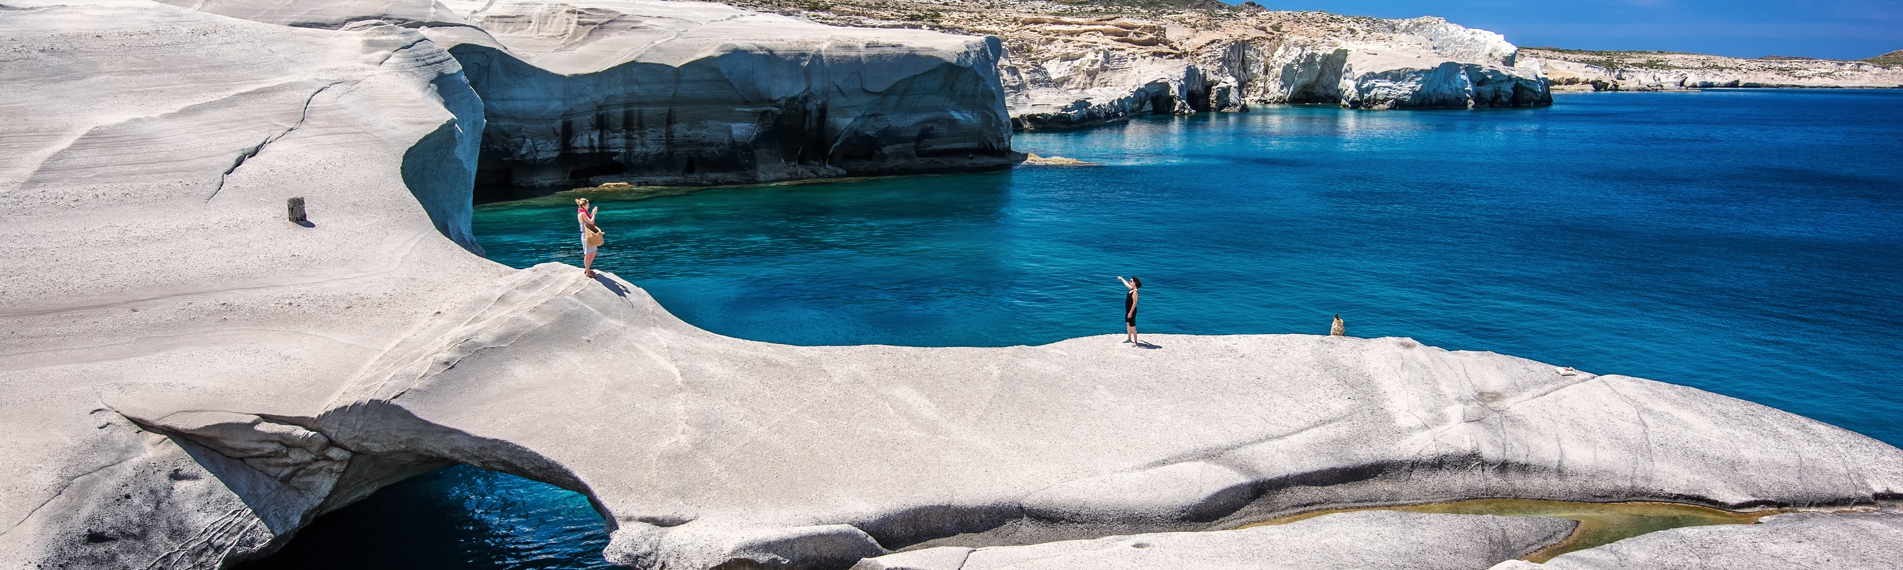 Formazioni rocciose bianche sul mare azzurro di Milos